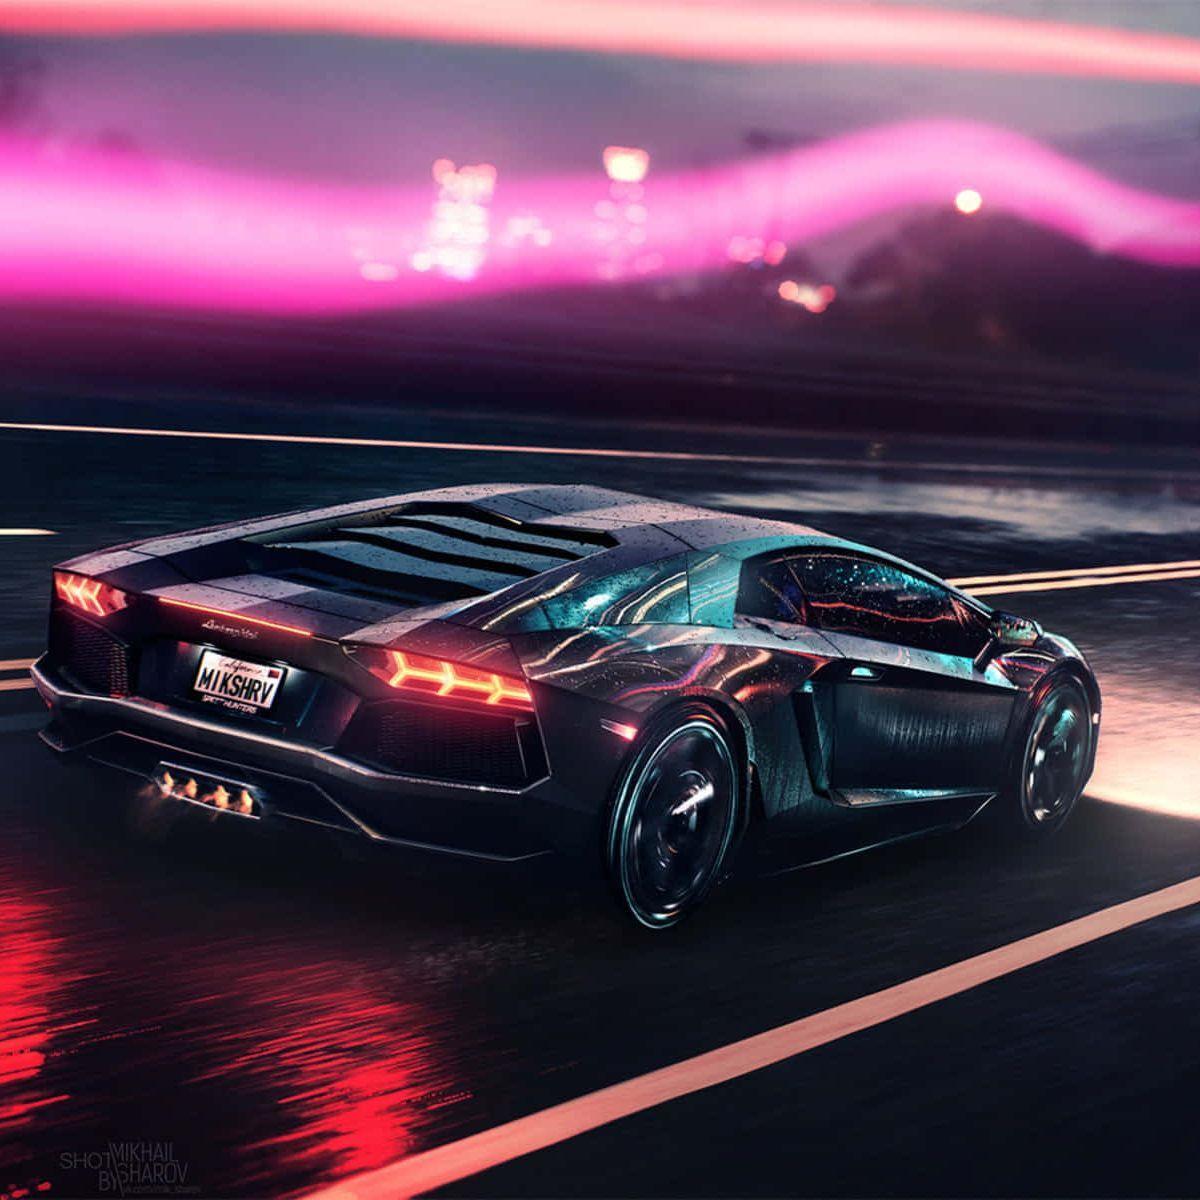 Машину новая клубная. Картинки машин высокого разрешения. Lamborghini Aventador 16:9. Ламборгини ночью в городе. Картинки спокойной с машинами.